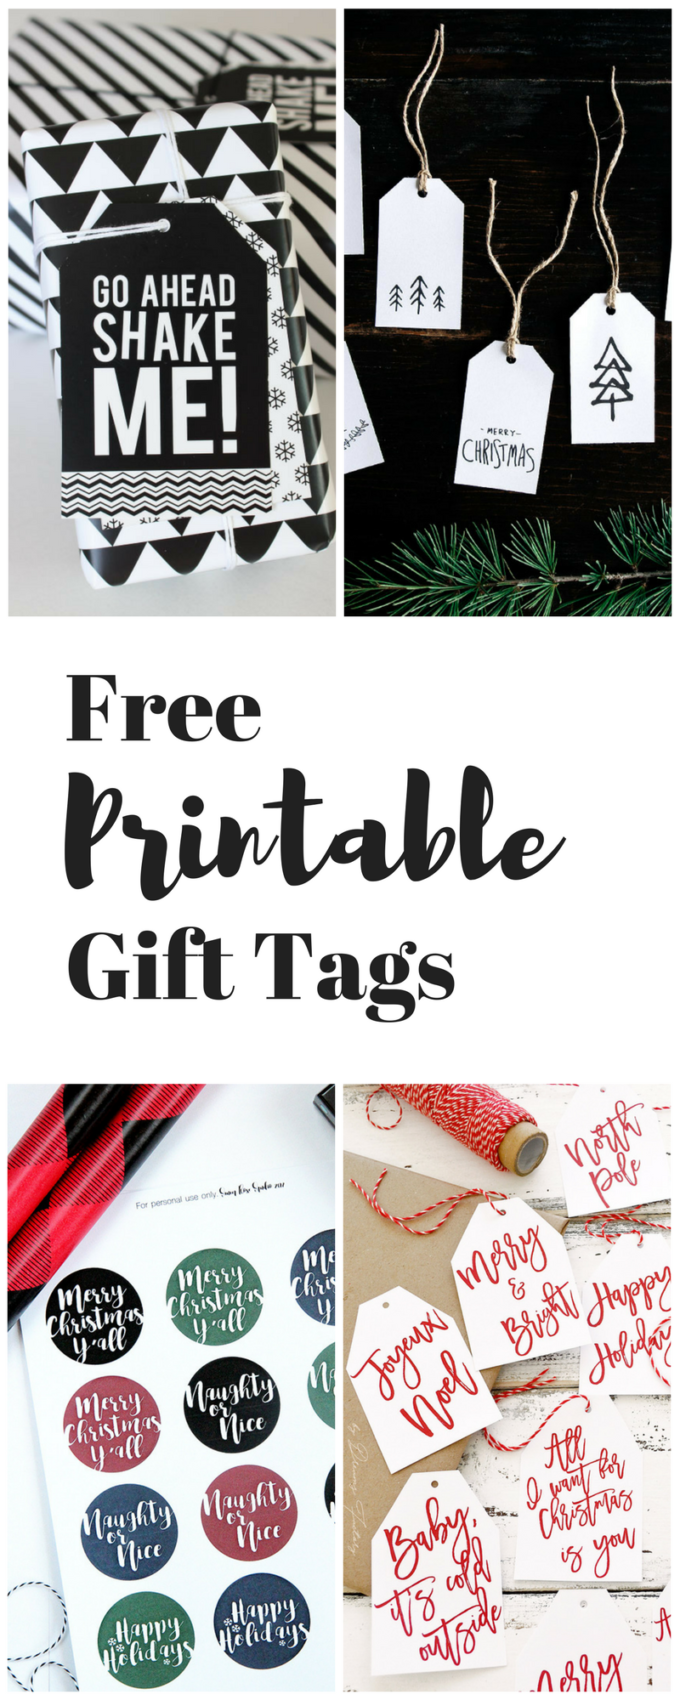 printable gift tags for Christmas